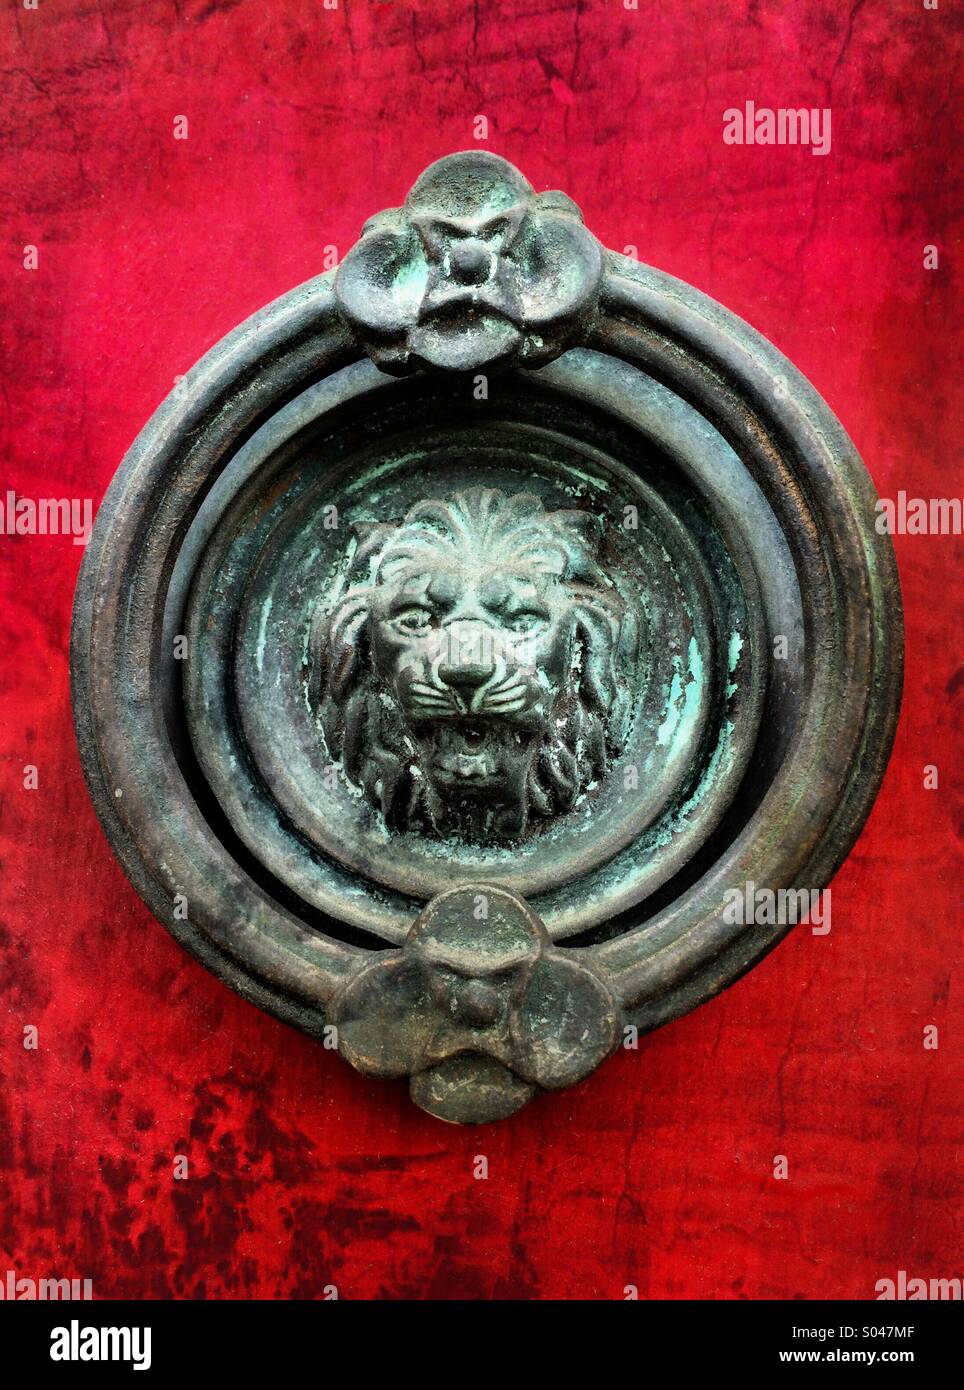 Am alten Kupfer Türklopfer der Kopf eines Löwen ist ein starker Kontrast zu einer roten Tür. Stockfoto